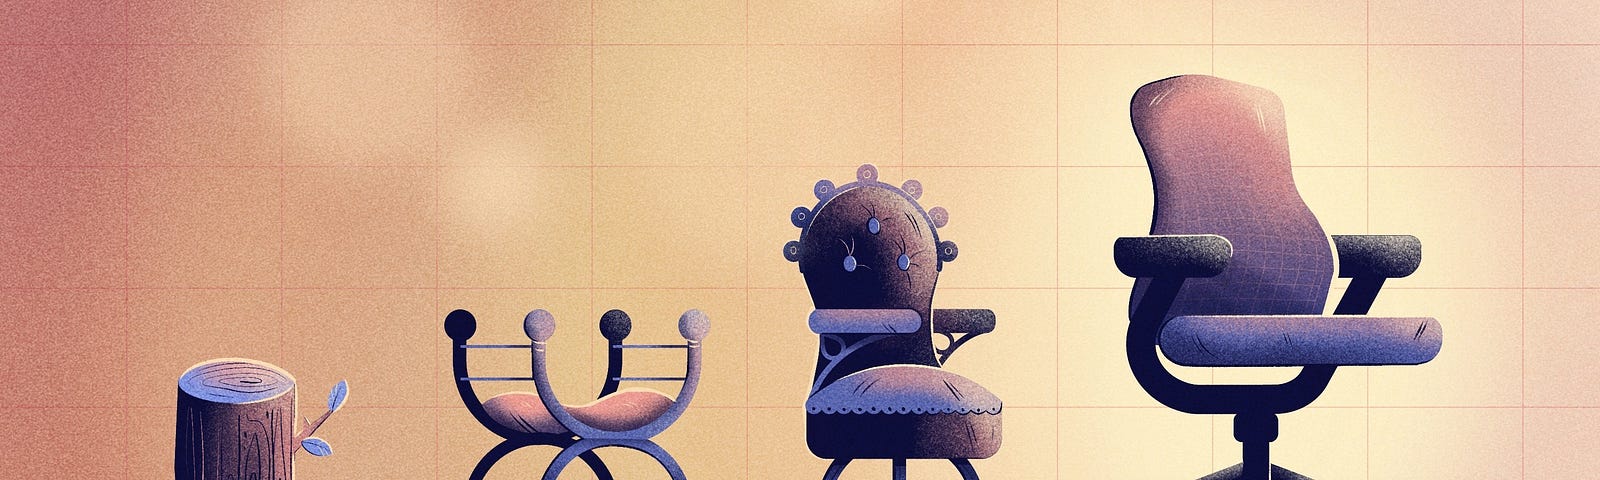 椅子的演变的编辑插图。椅子是紫色的，背景是黄色的。第一把椅子是一个树桩。第二把椅子是曲尺椅。第三把椅子是向心椅。第四把椅子是现代办公椅。